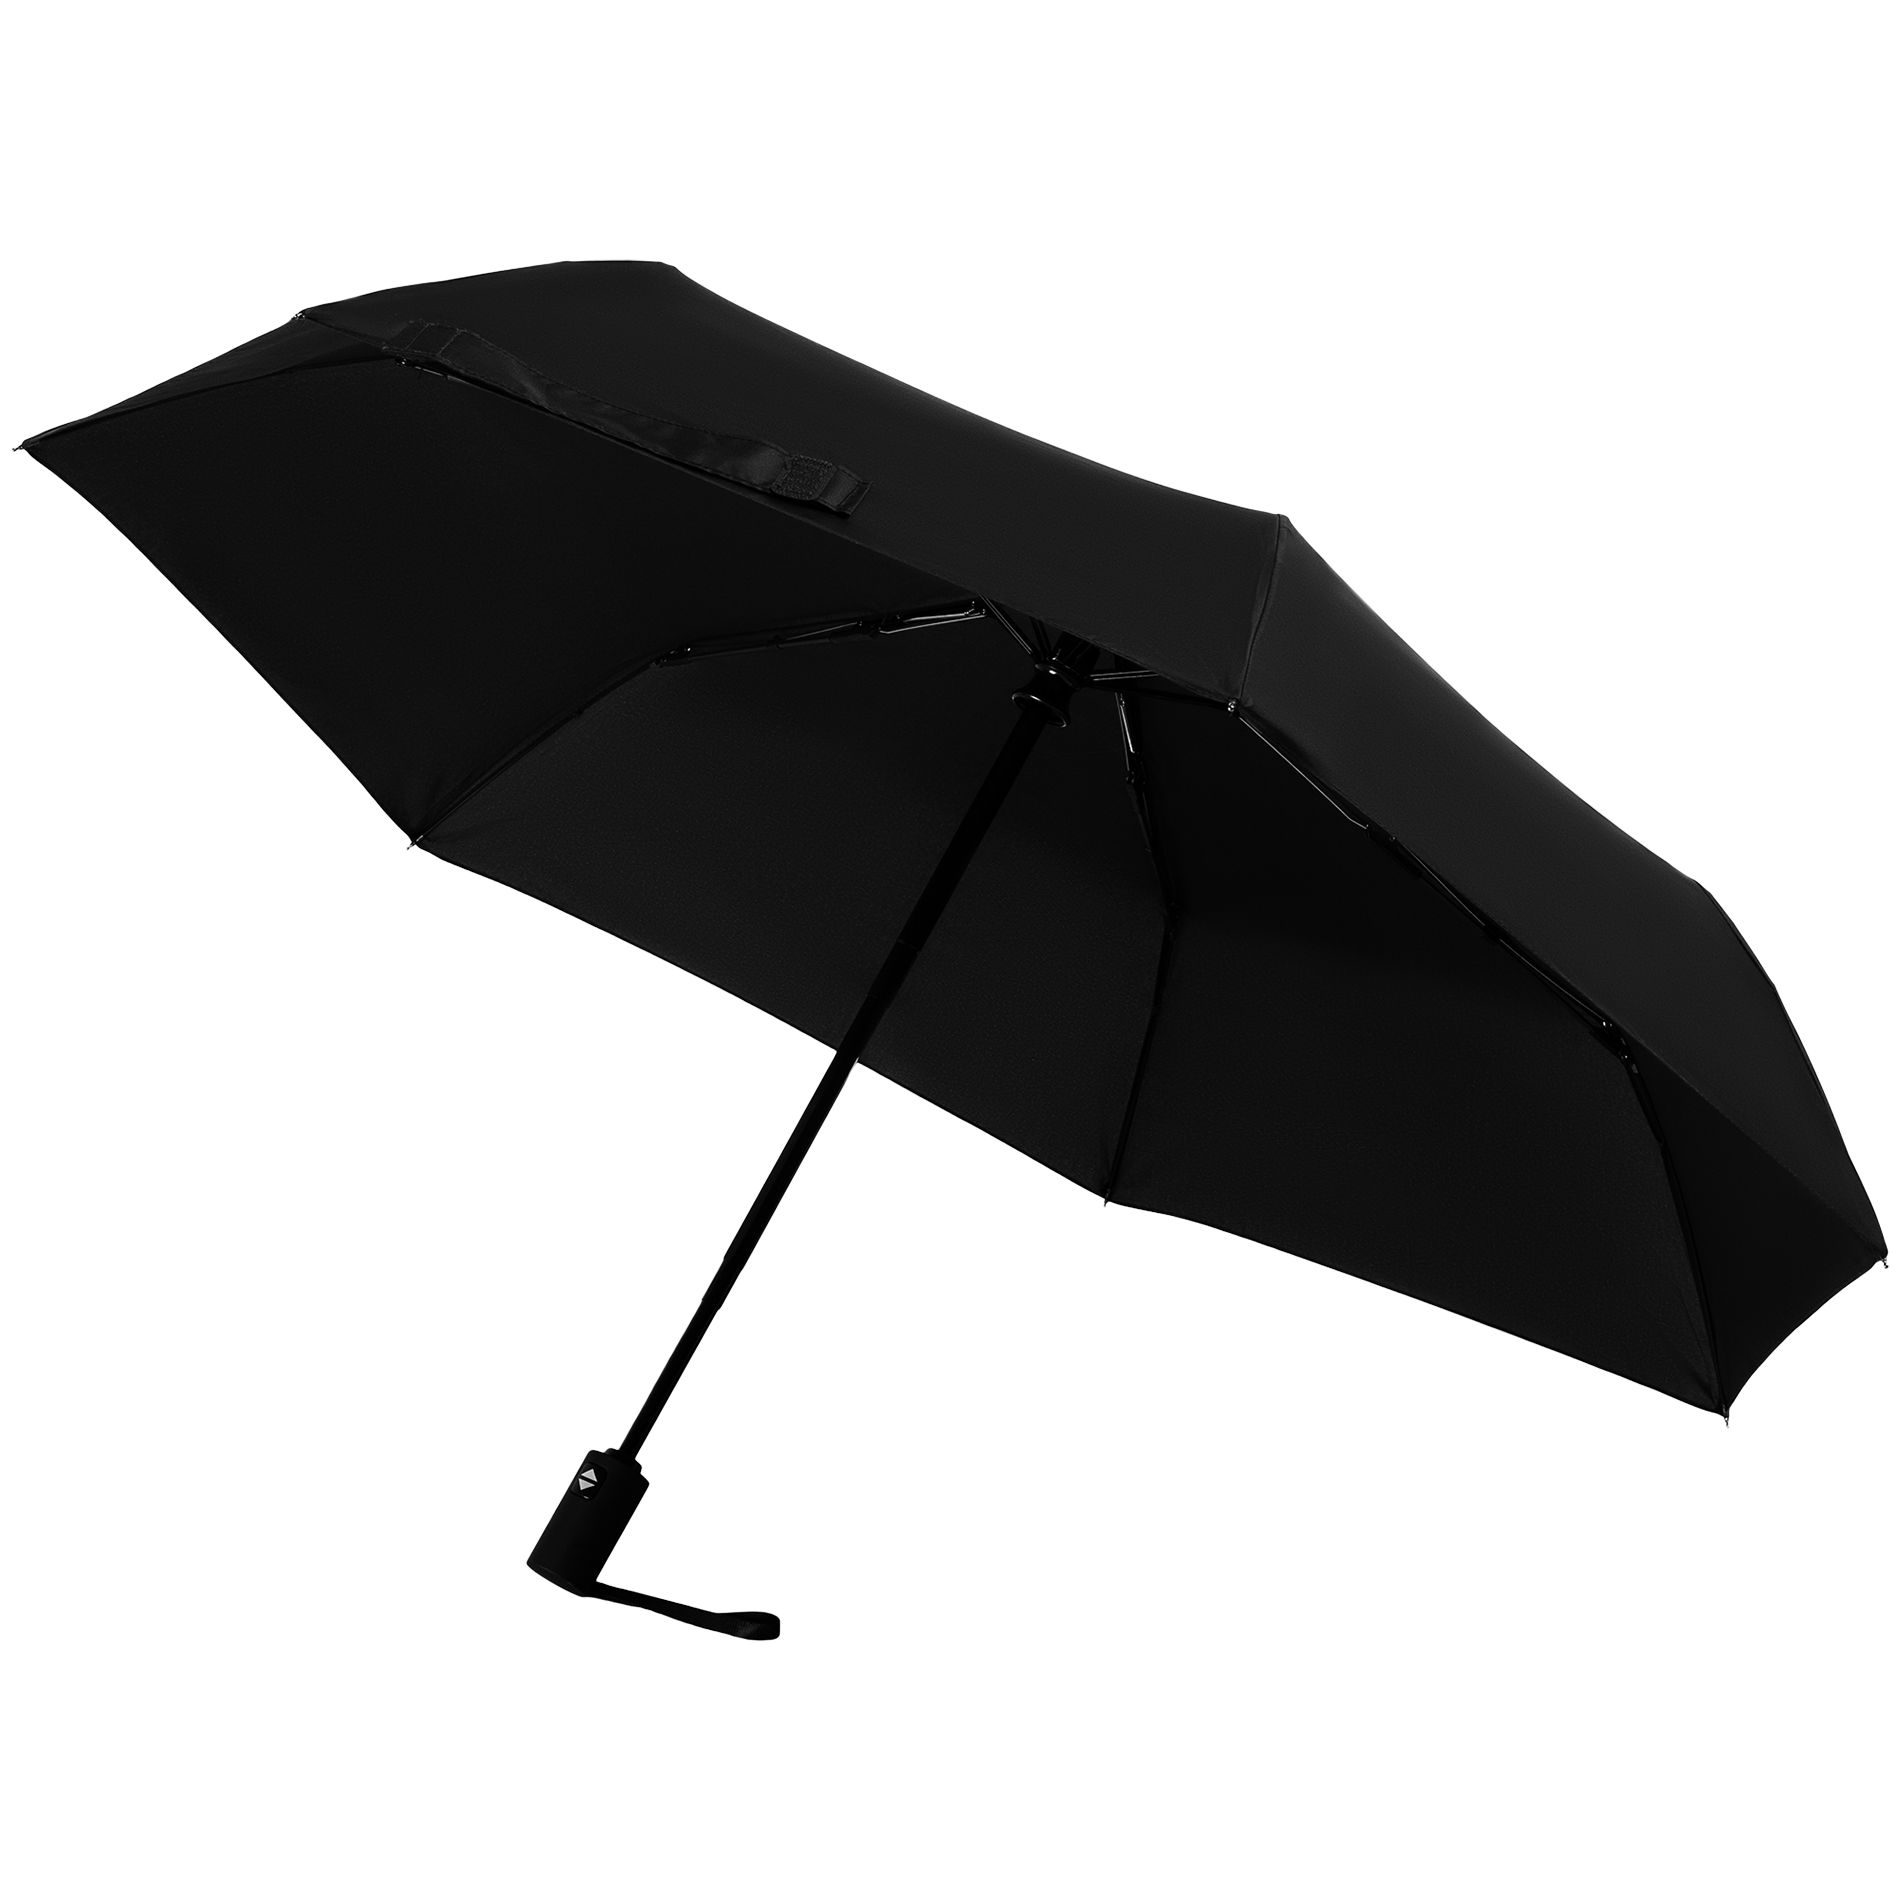 Зонт складной Trend Magic AOC